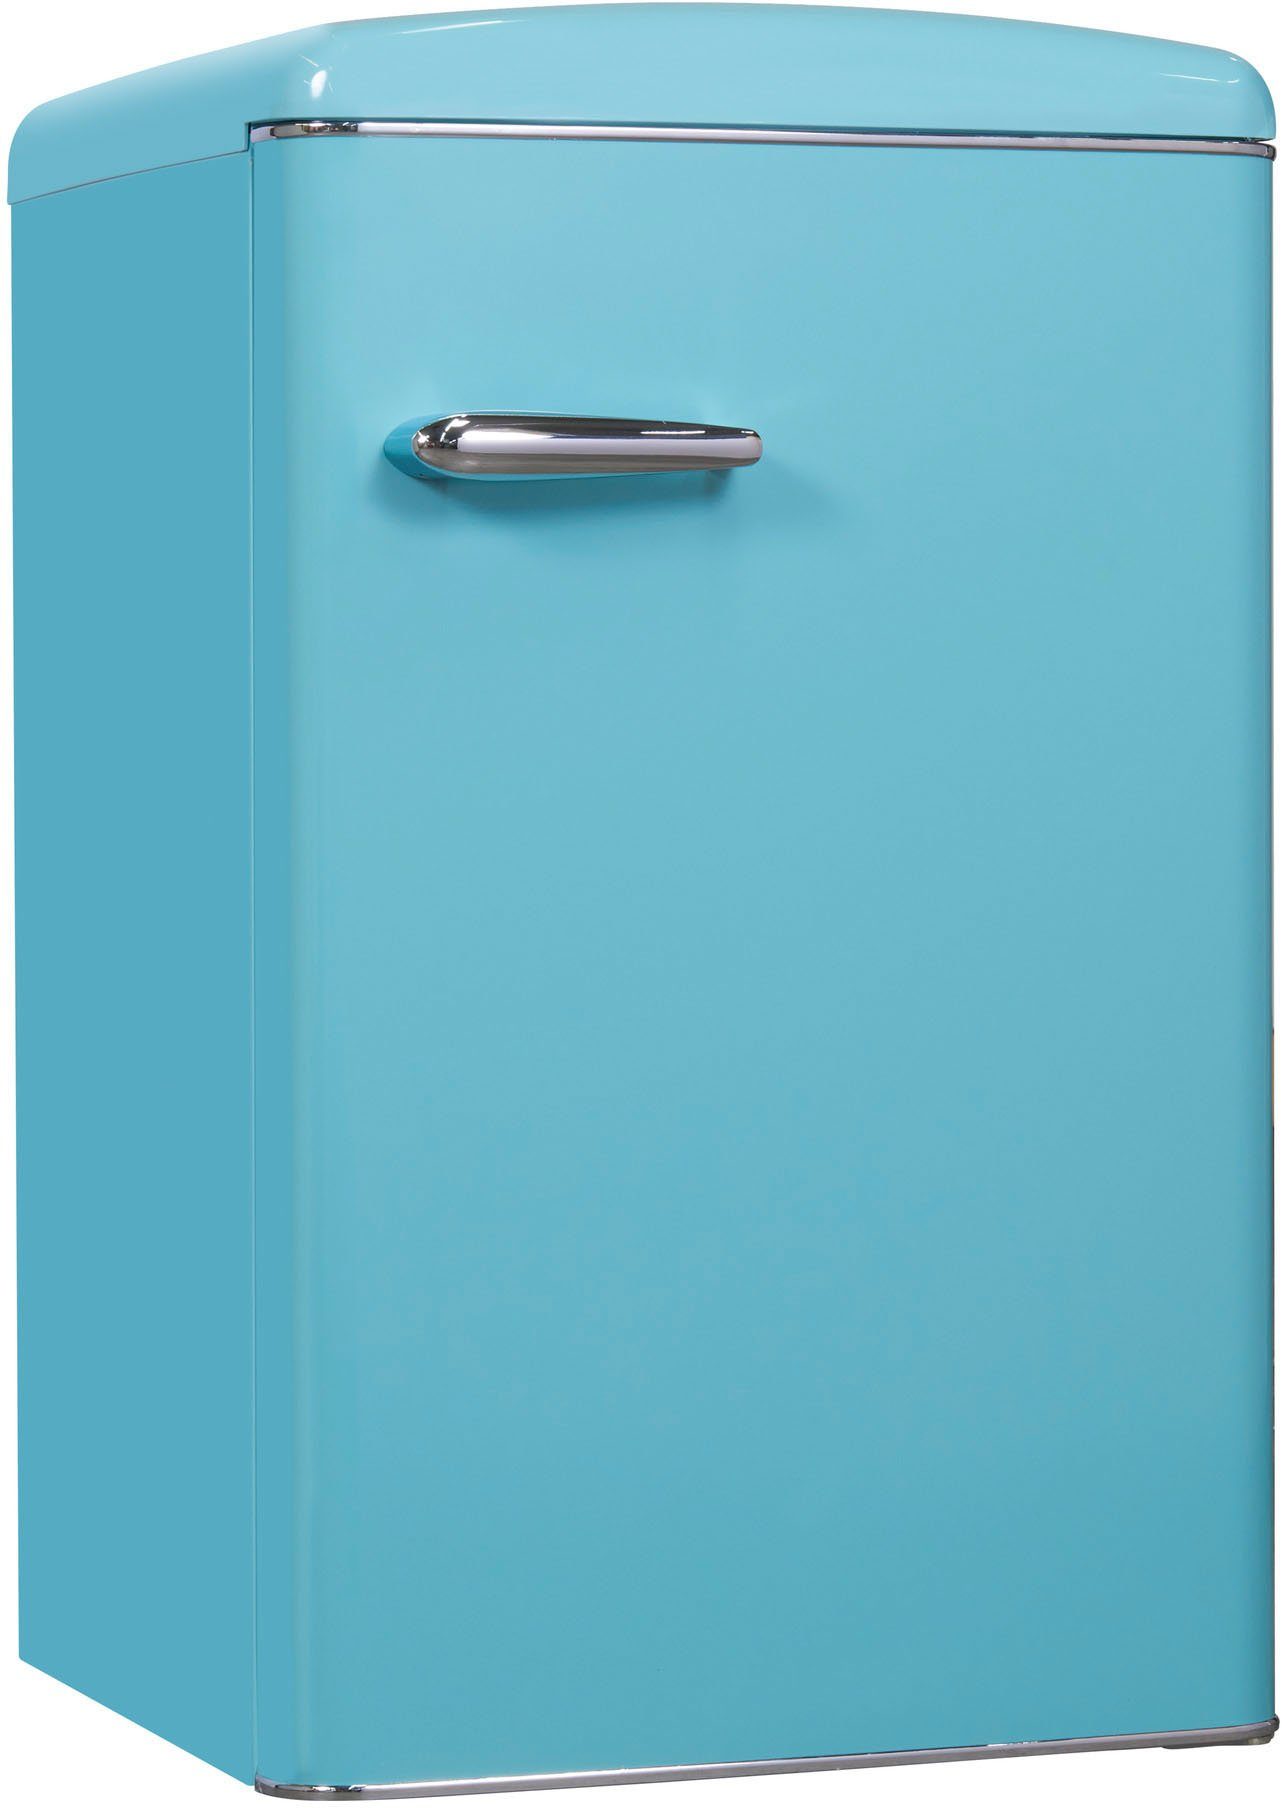 exquisit Kühlschrank cm breit 55 taubenblau, hoch, cm 89,5 RKS120-V-H-160F